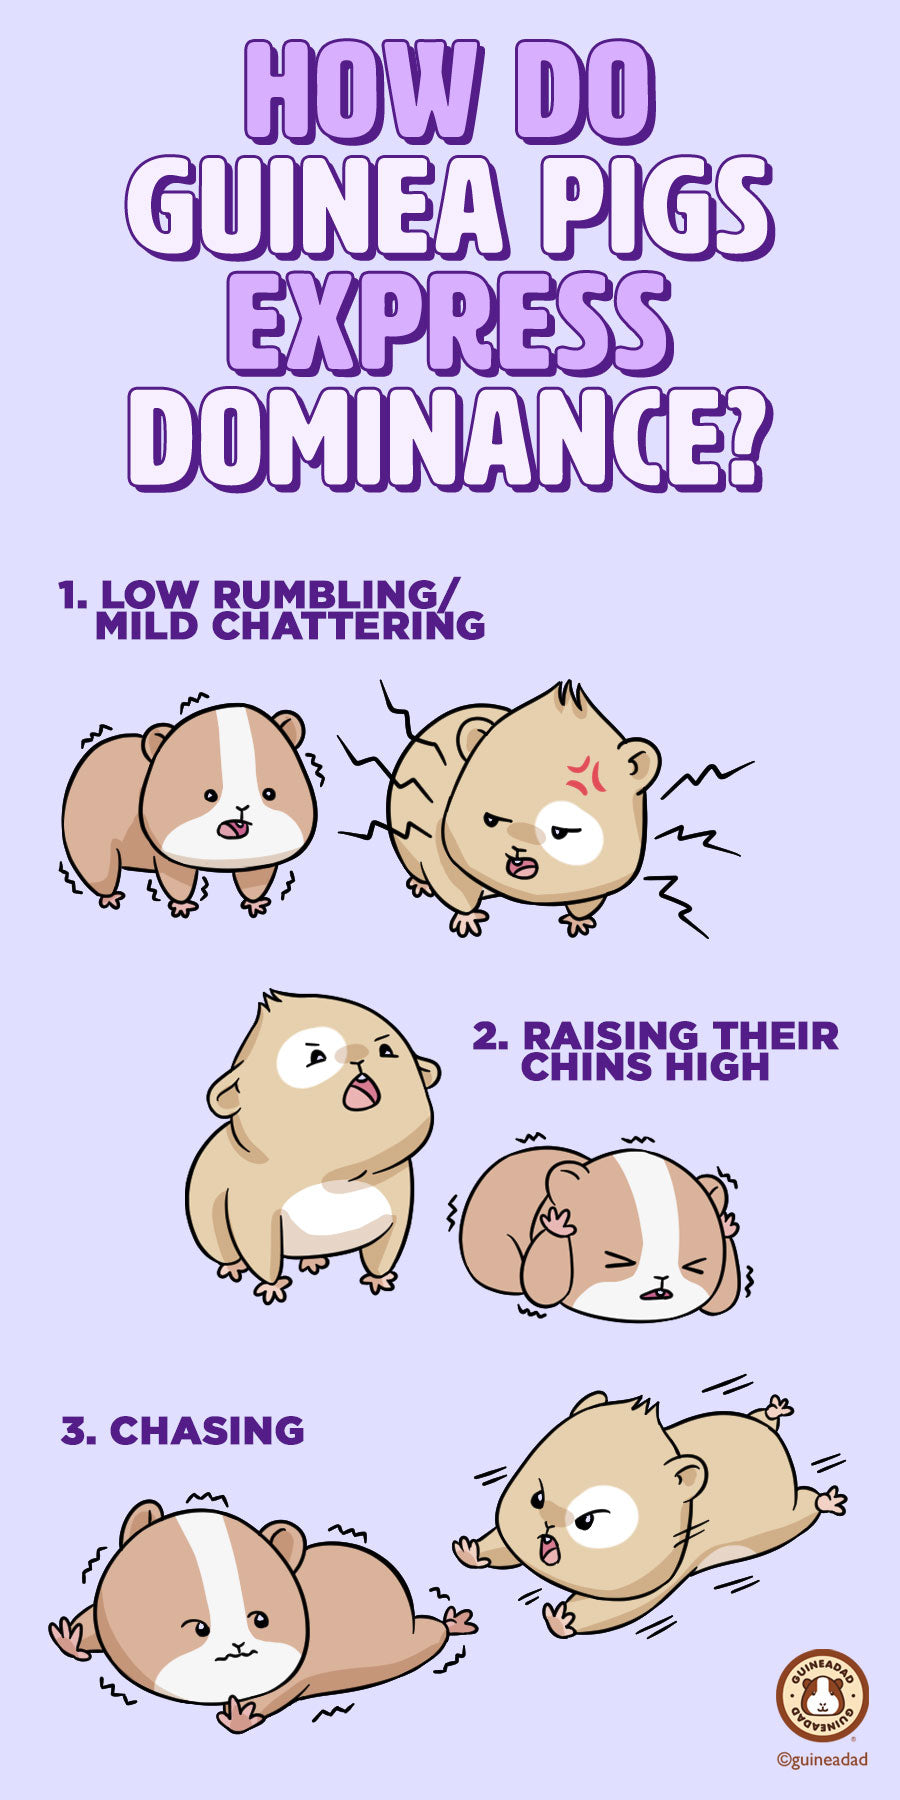 How do guinea pigs express dominance?